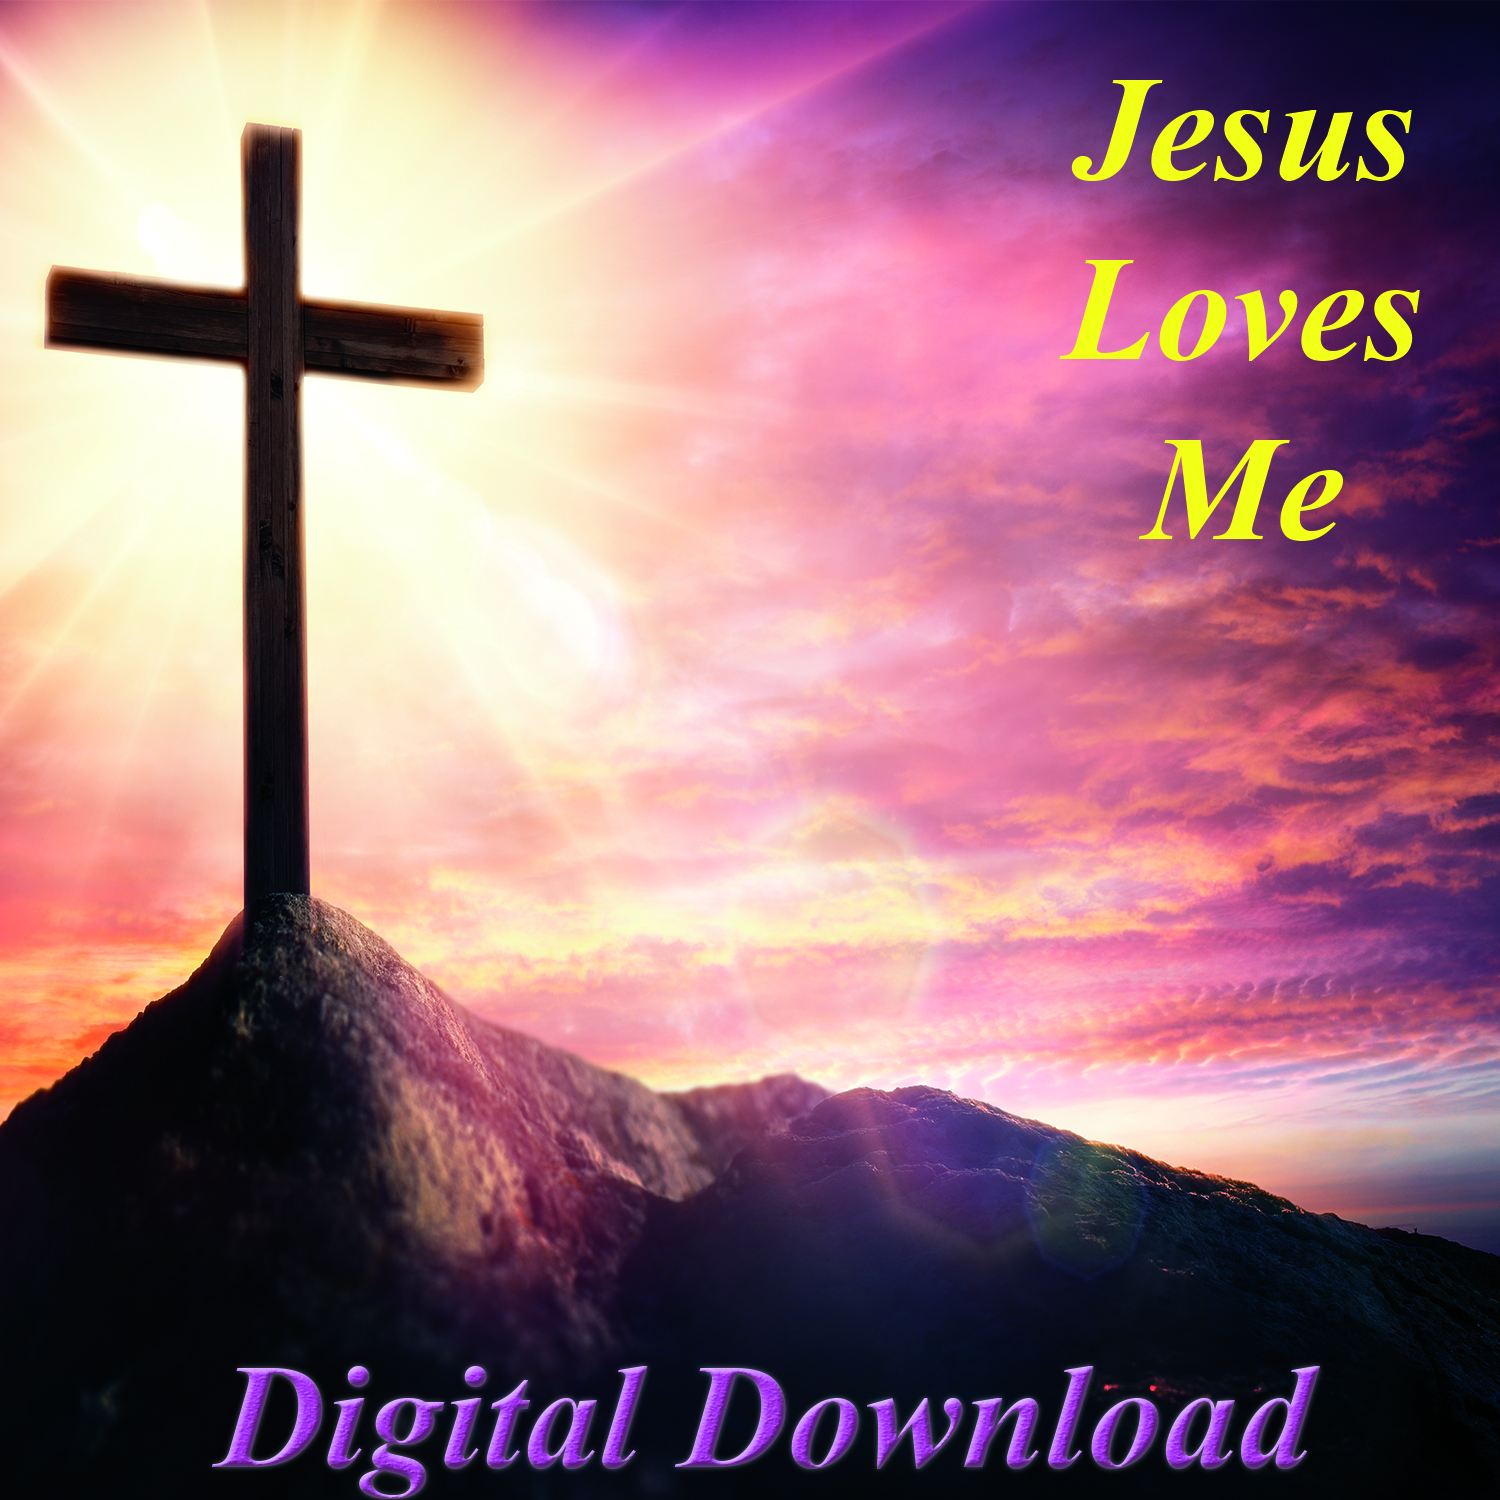 Jesus Love Me Images - De For School